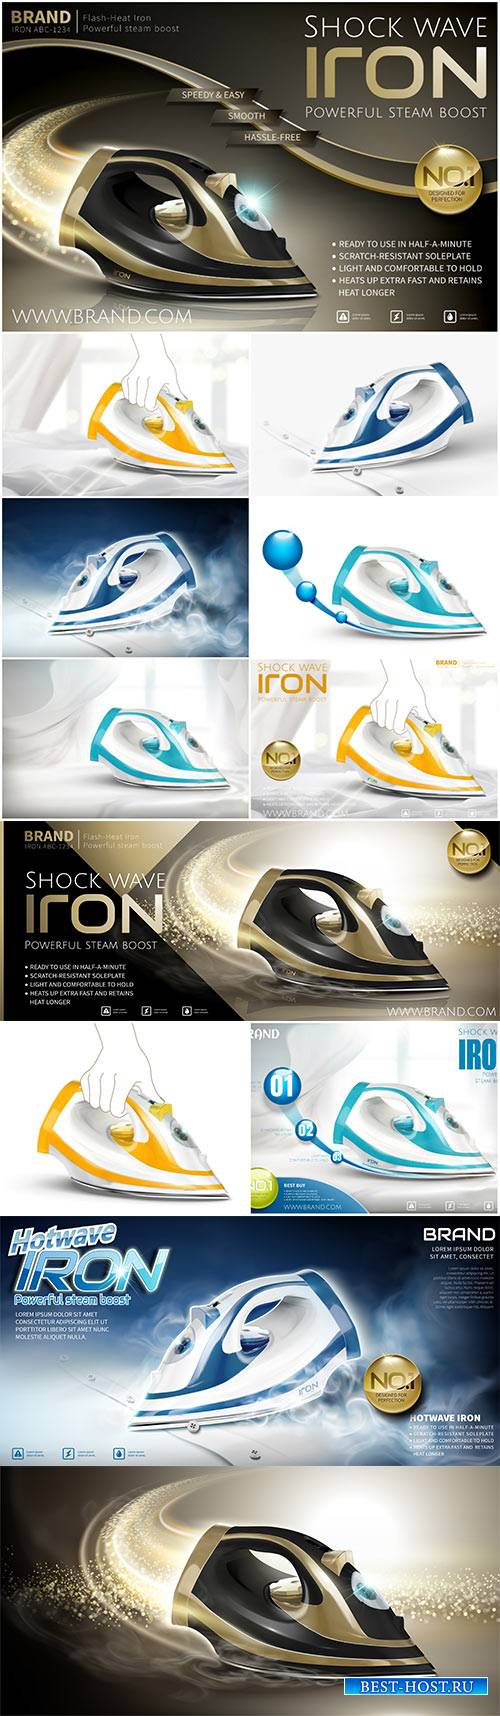 Iron in vector 3d illustration, steam iron advertisement